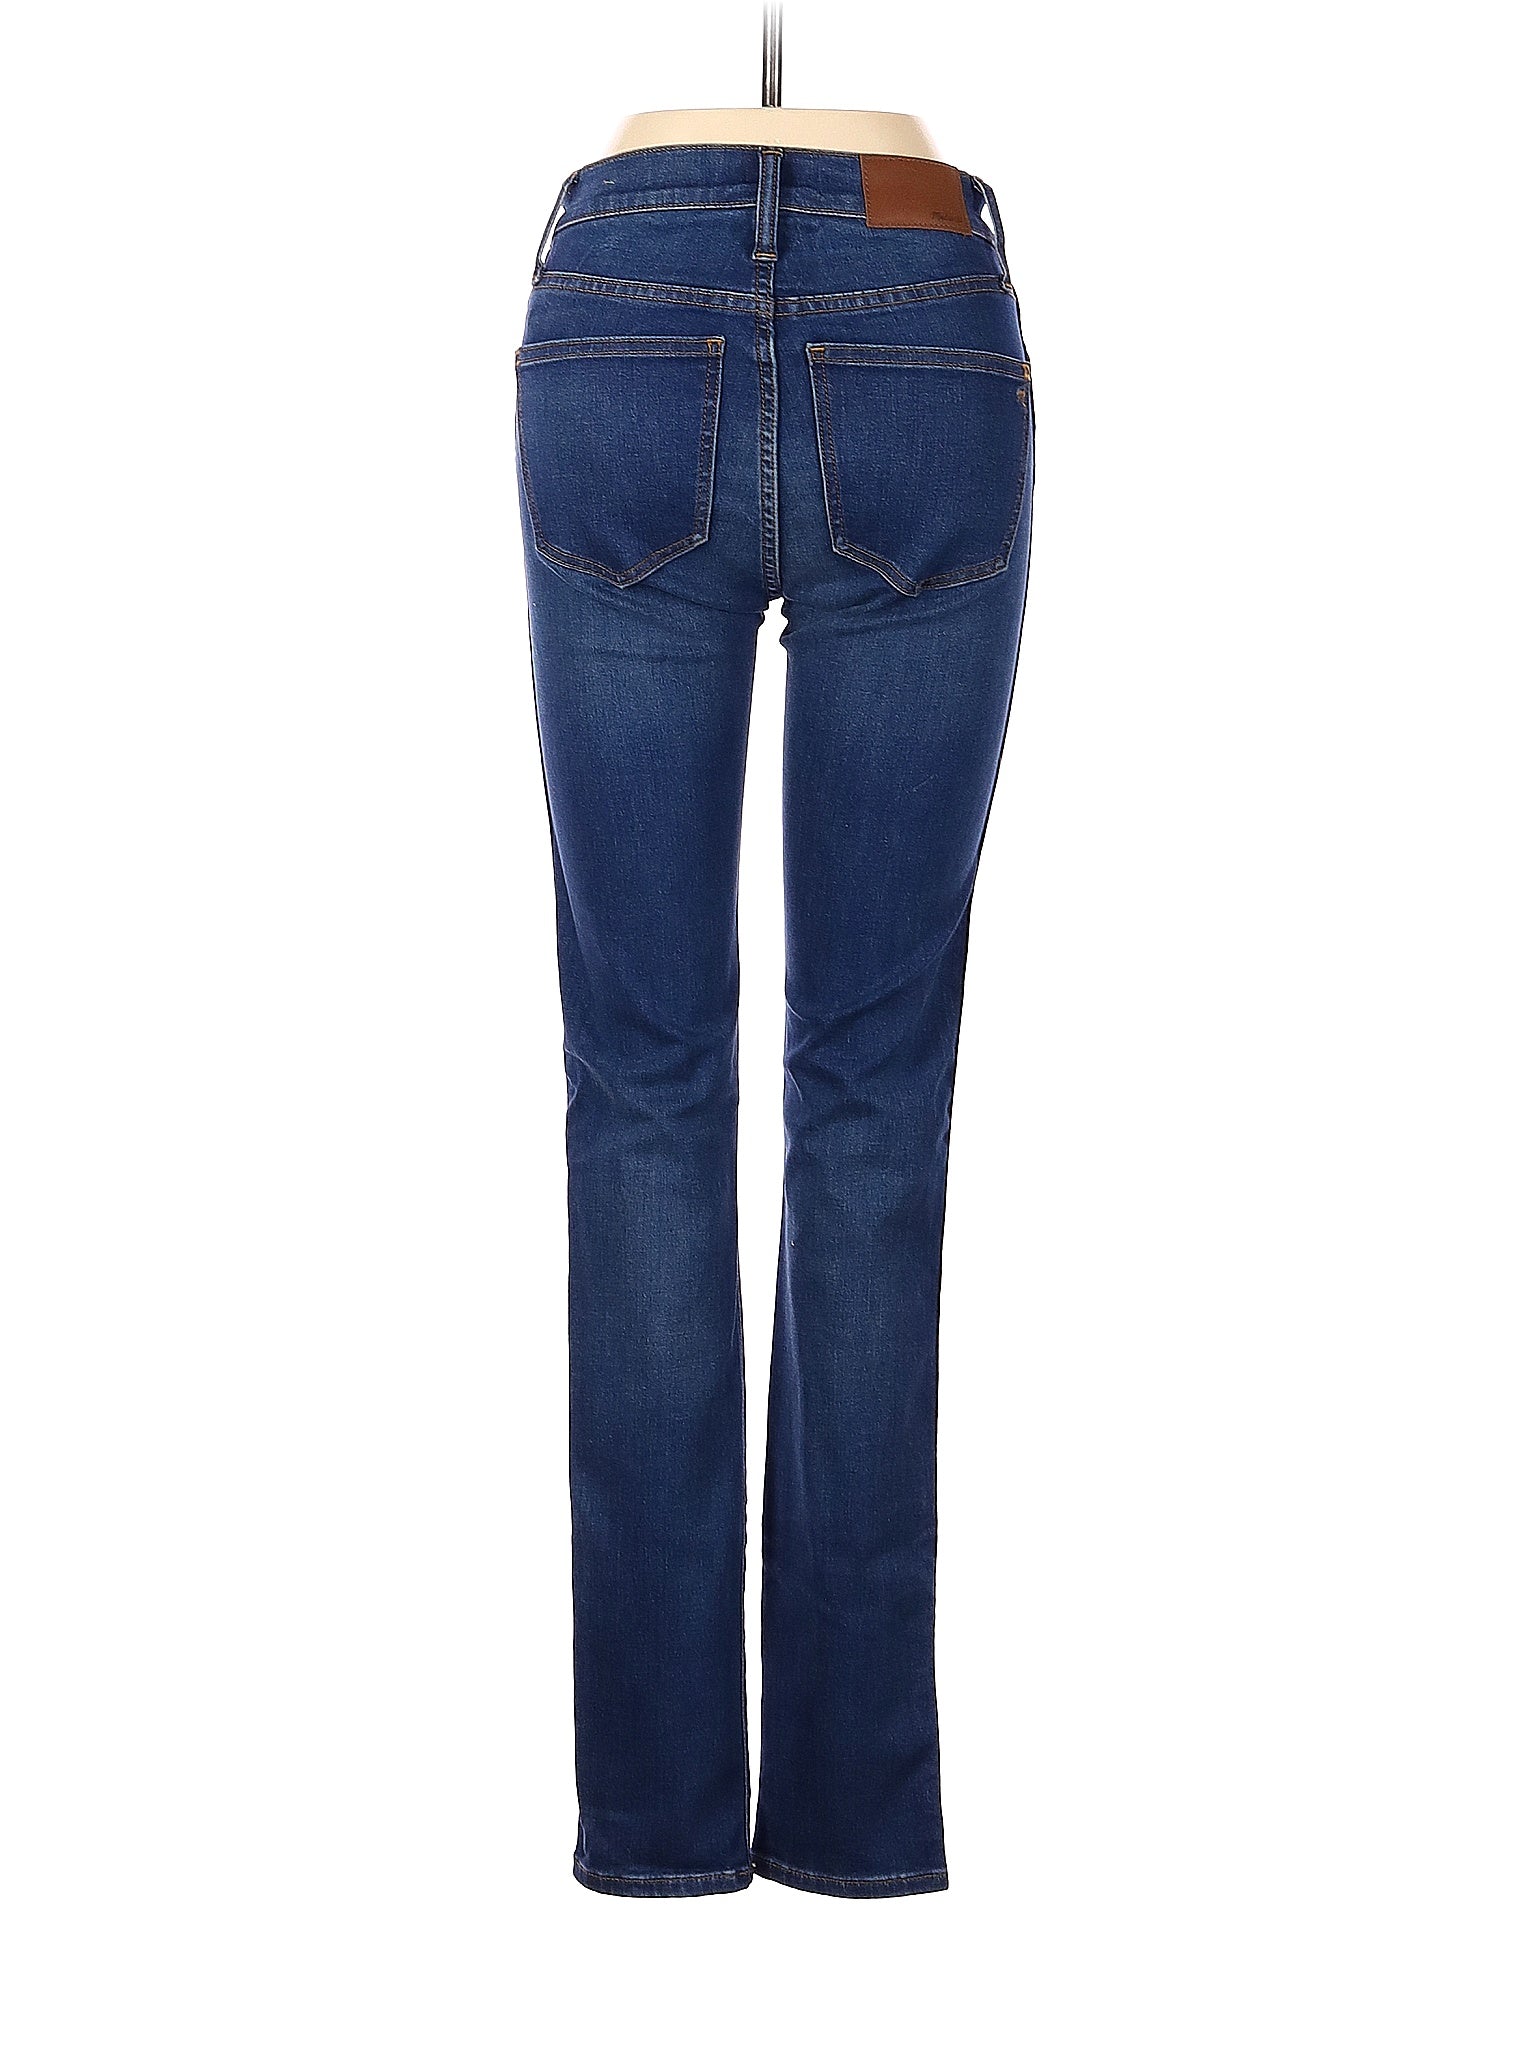 Bootleg Jeans in Dark Wash waist size - 24 T